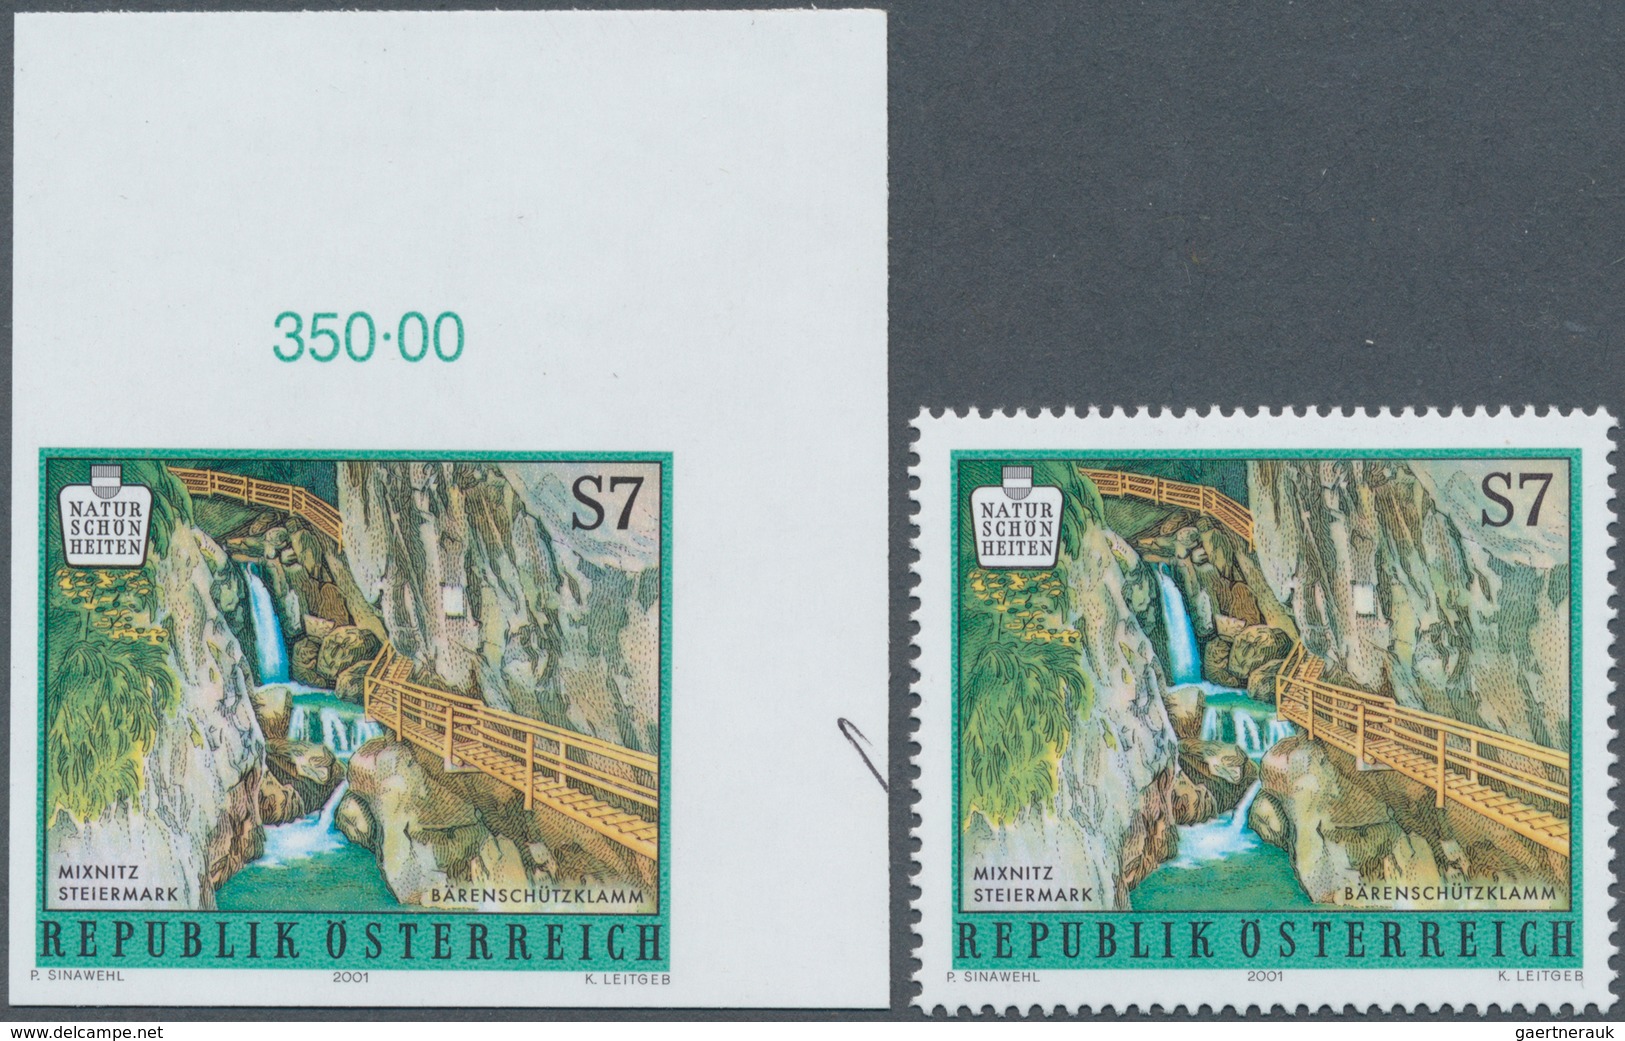 29824 Österreich: 1957/2001, Hochwertiger Attest-Posten von sechs UNGEZÄHNTEN Marken und einem Probedruck,